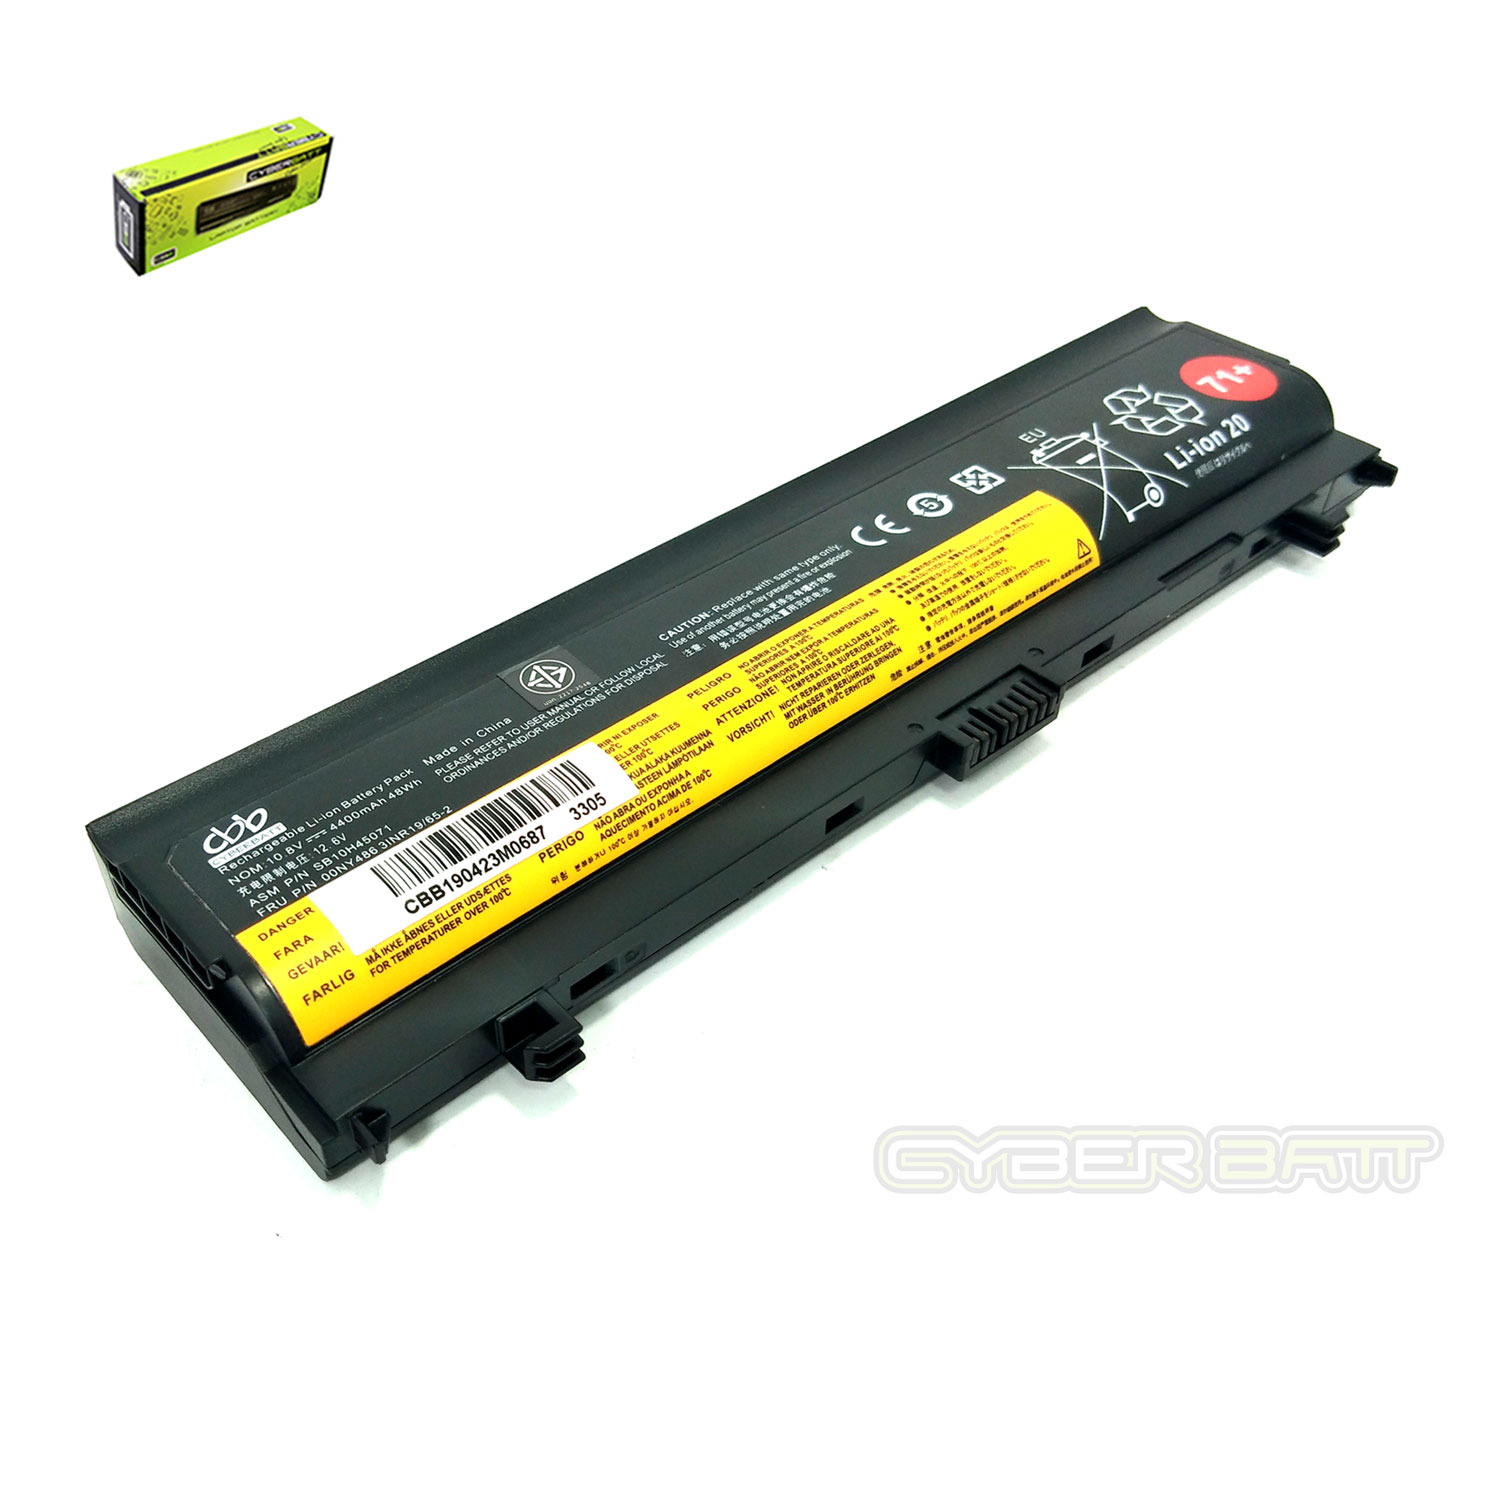 Battery Lenovo ThinkPad L560 00NY486 : 10.8 V-4400mAh Black (CBB)